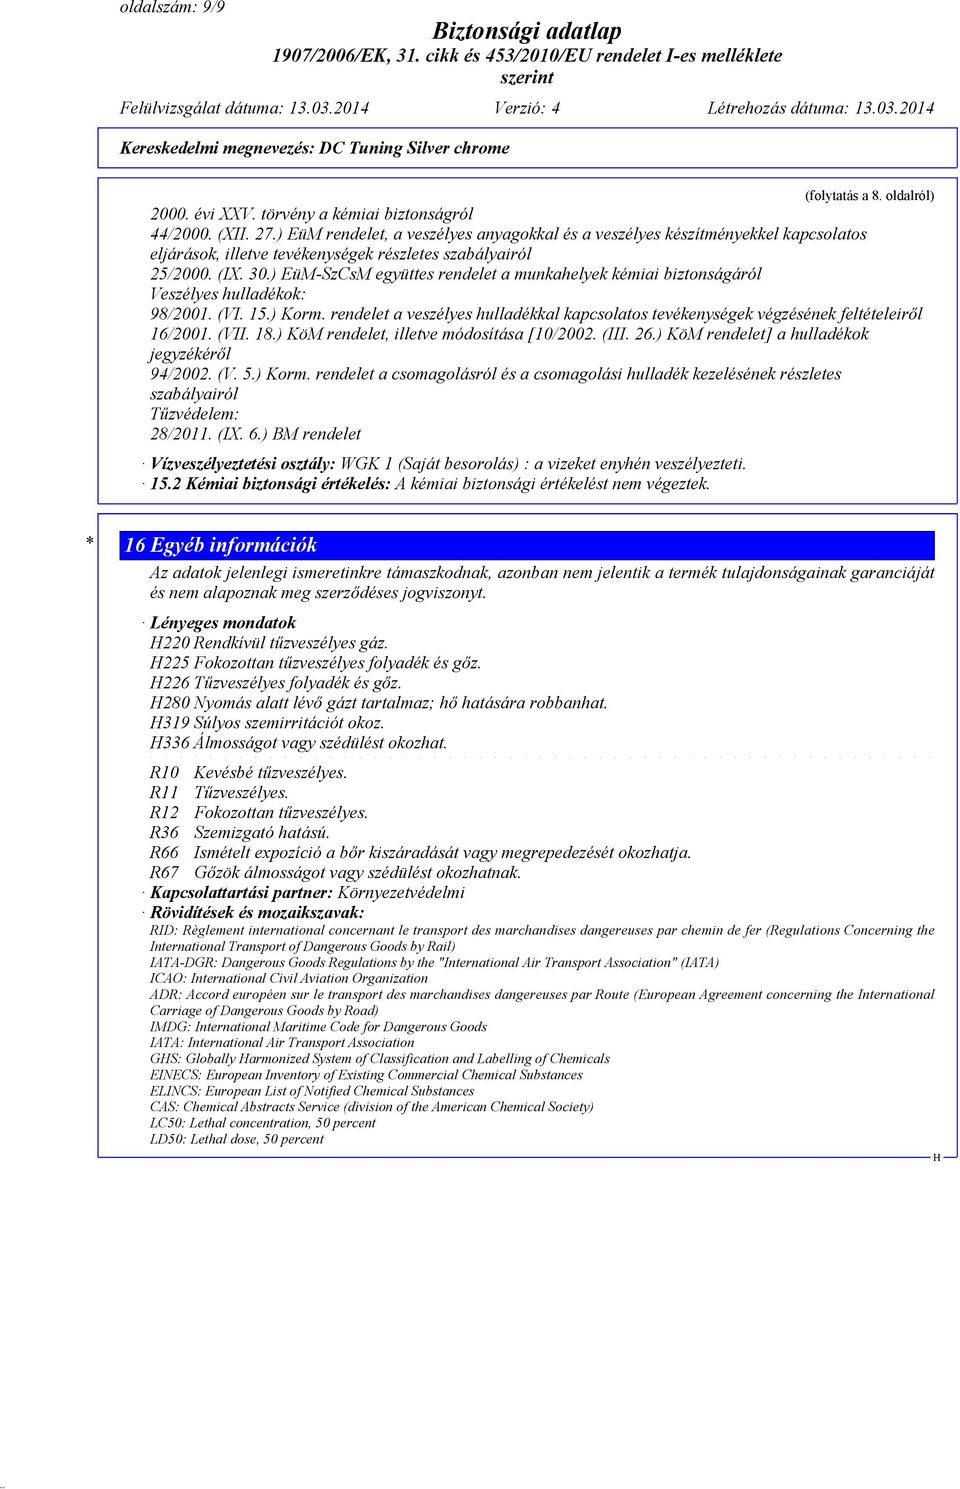 ) EüM-SzCsM együttes rendelet a munkahelyek kémiai biztonságáról Veszélyes hulladékok: 98/2001. (VI. 15.) Korm.